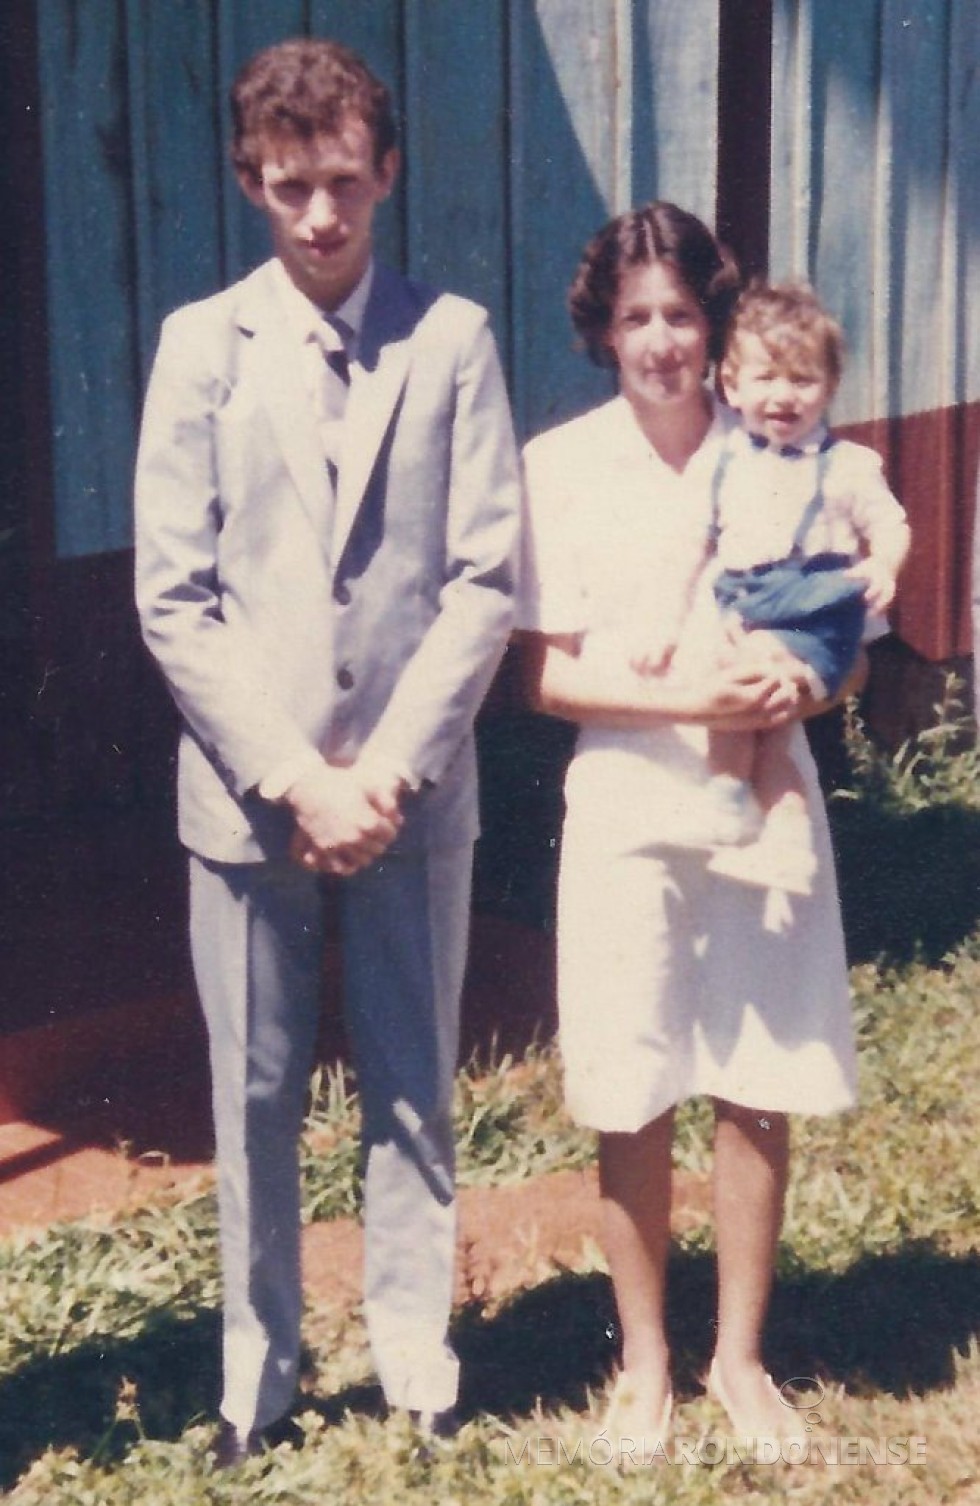 || Casal Celso Weber e Maria Felder que se casaram em final de setembro de 1986, com o filho Marcelo.
Imagem: Acervo do casal - FOTO 4 -